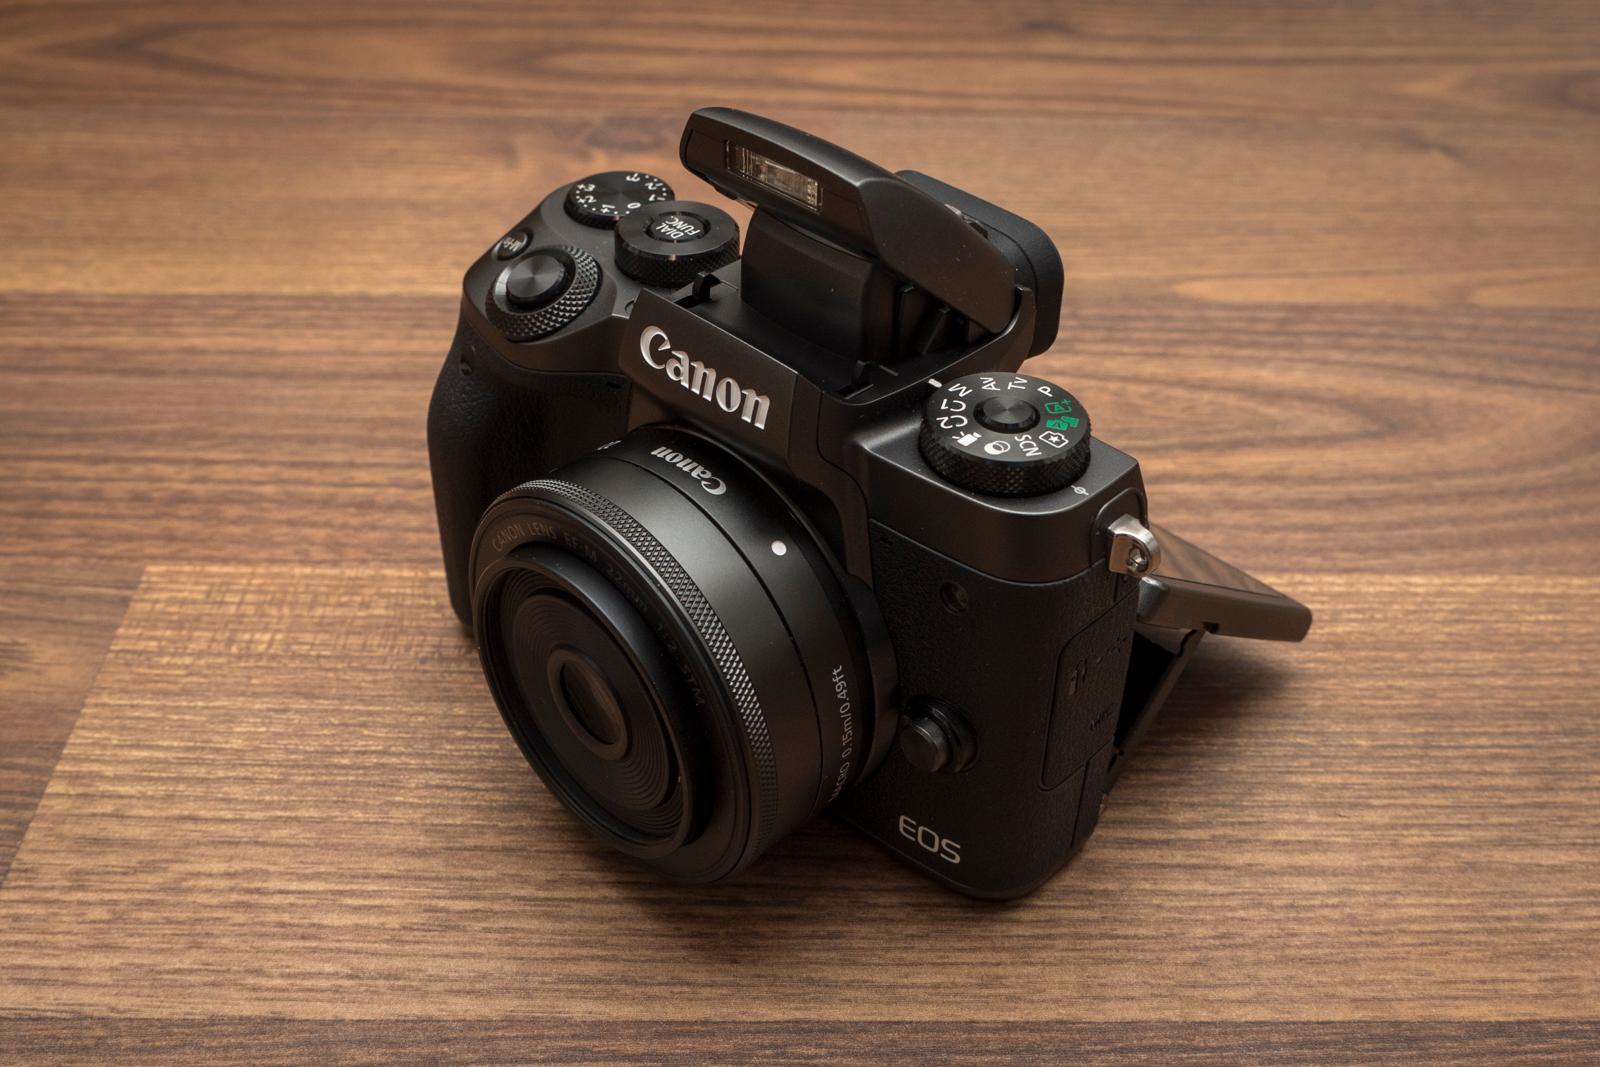 Canon EOS M5 er nok ikke det speilløse kameraet gamle Canon-veteraner har ventet på, men mer et kamera for interesserte nybegynnere. Og i det segmentet tror vi det kan klare seg bra.